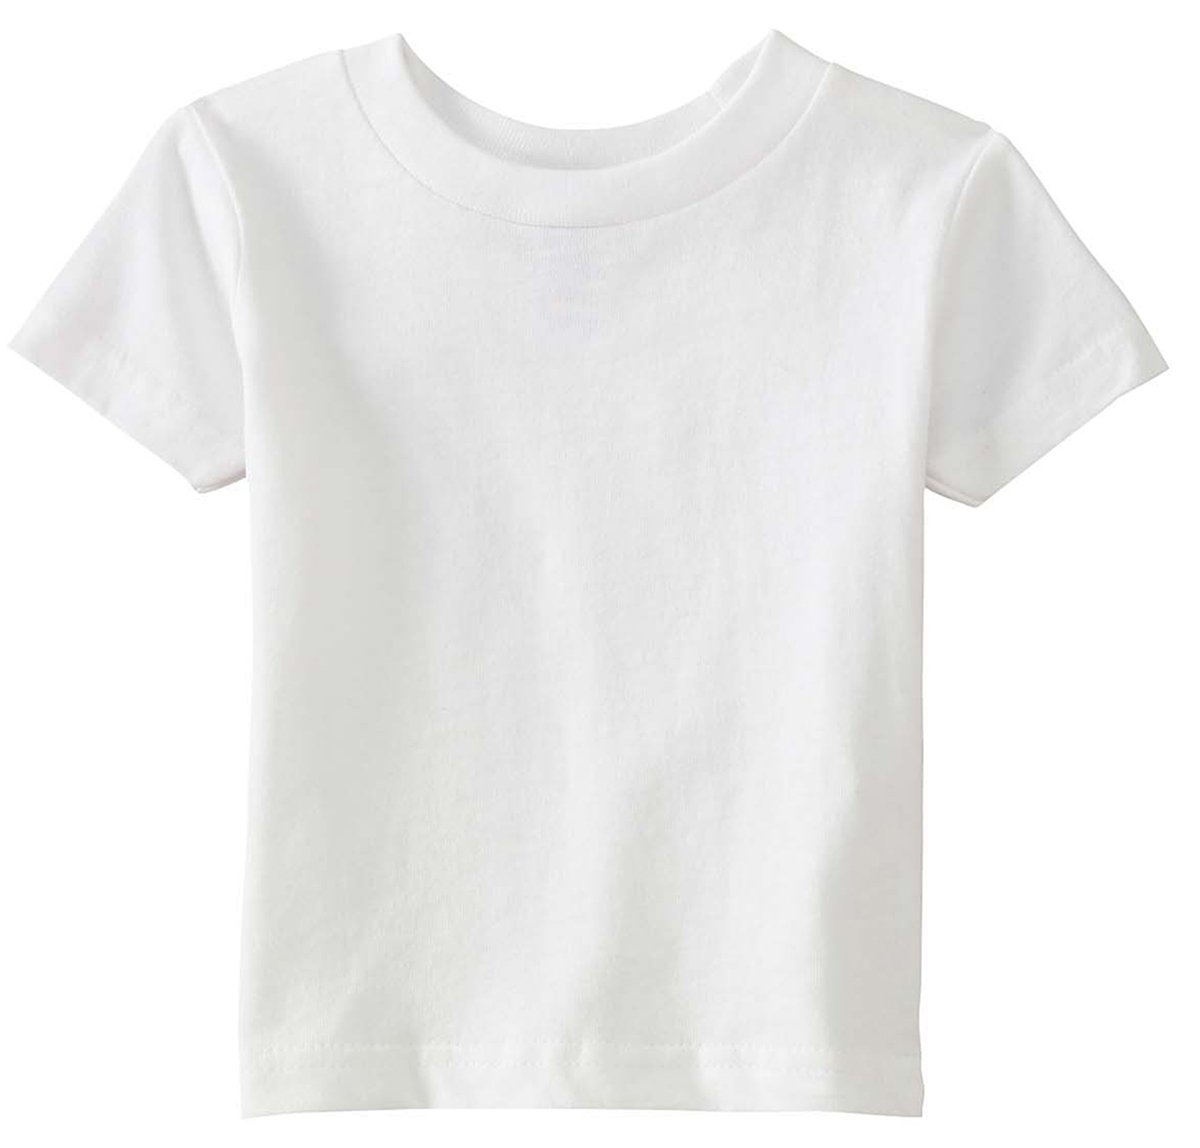 Rabbit Skins Infant Short Sleeve T-Shirt, White, 6 Months